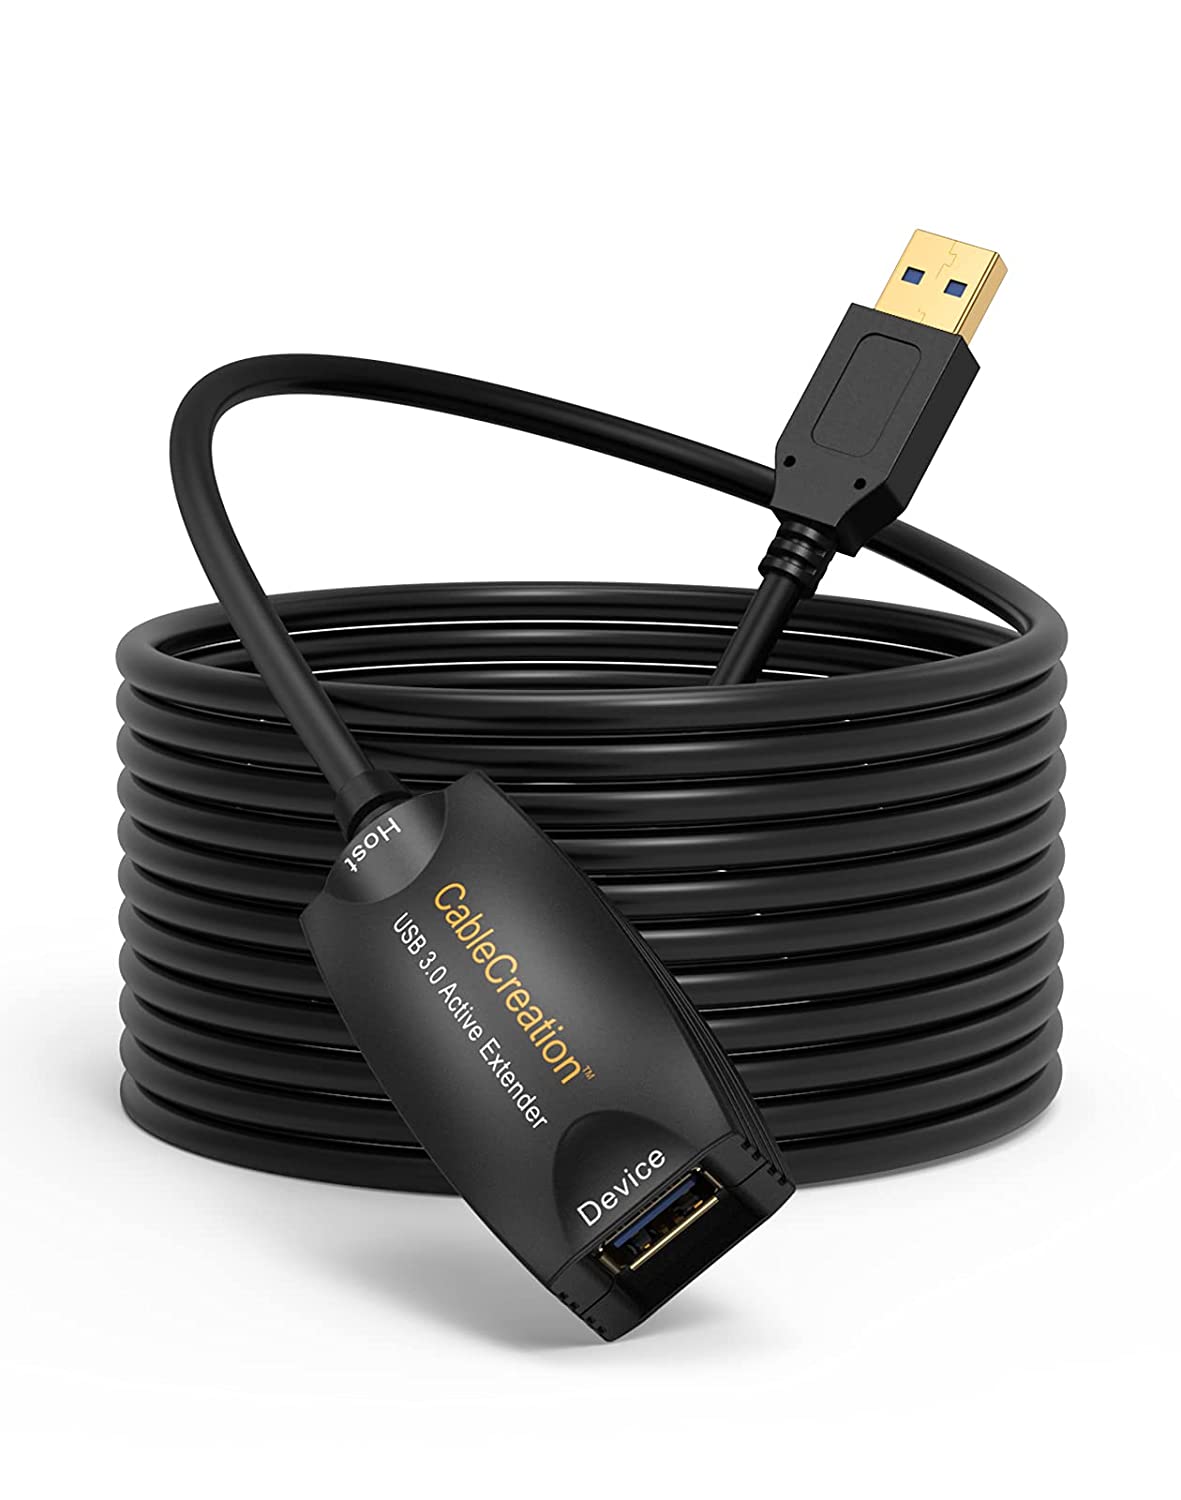 Szuper Gyors Aranyozott USB 3.0 aktív hosszabbító kábel, CableCreation Gold (5 méter hosszú) USB 3.0 A-dugasz-A-aljzat hosszabbító kábel